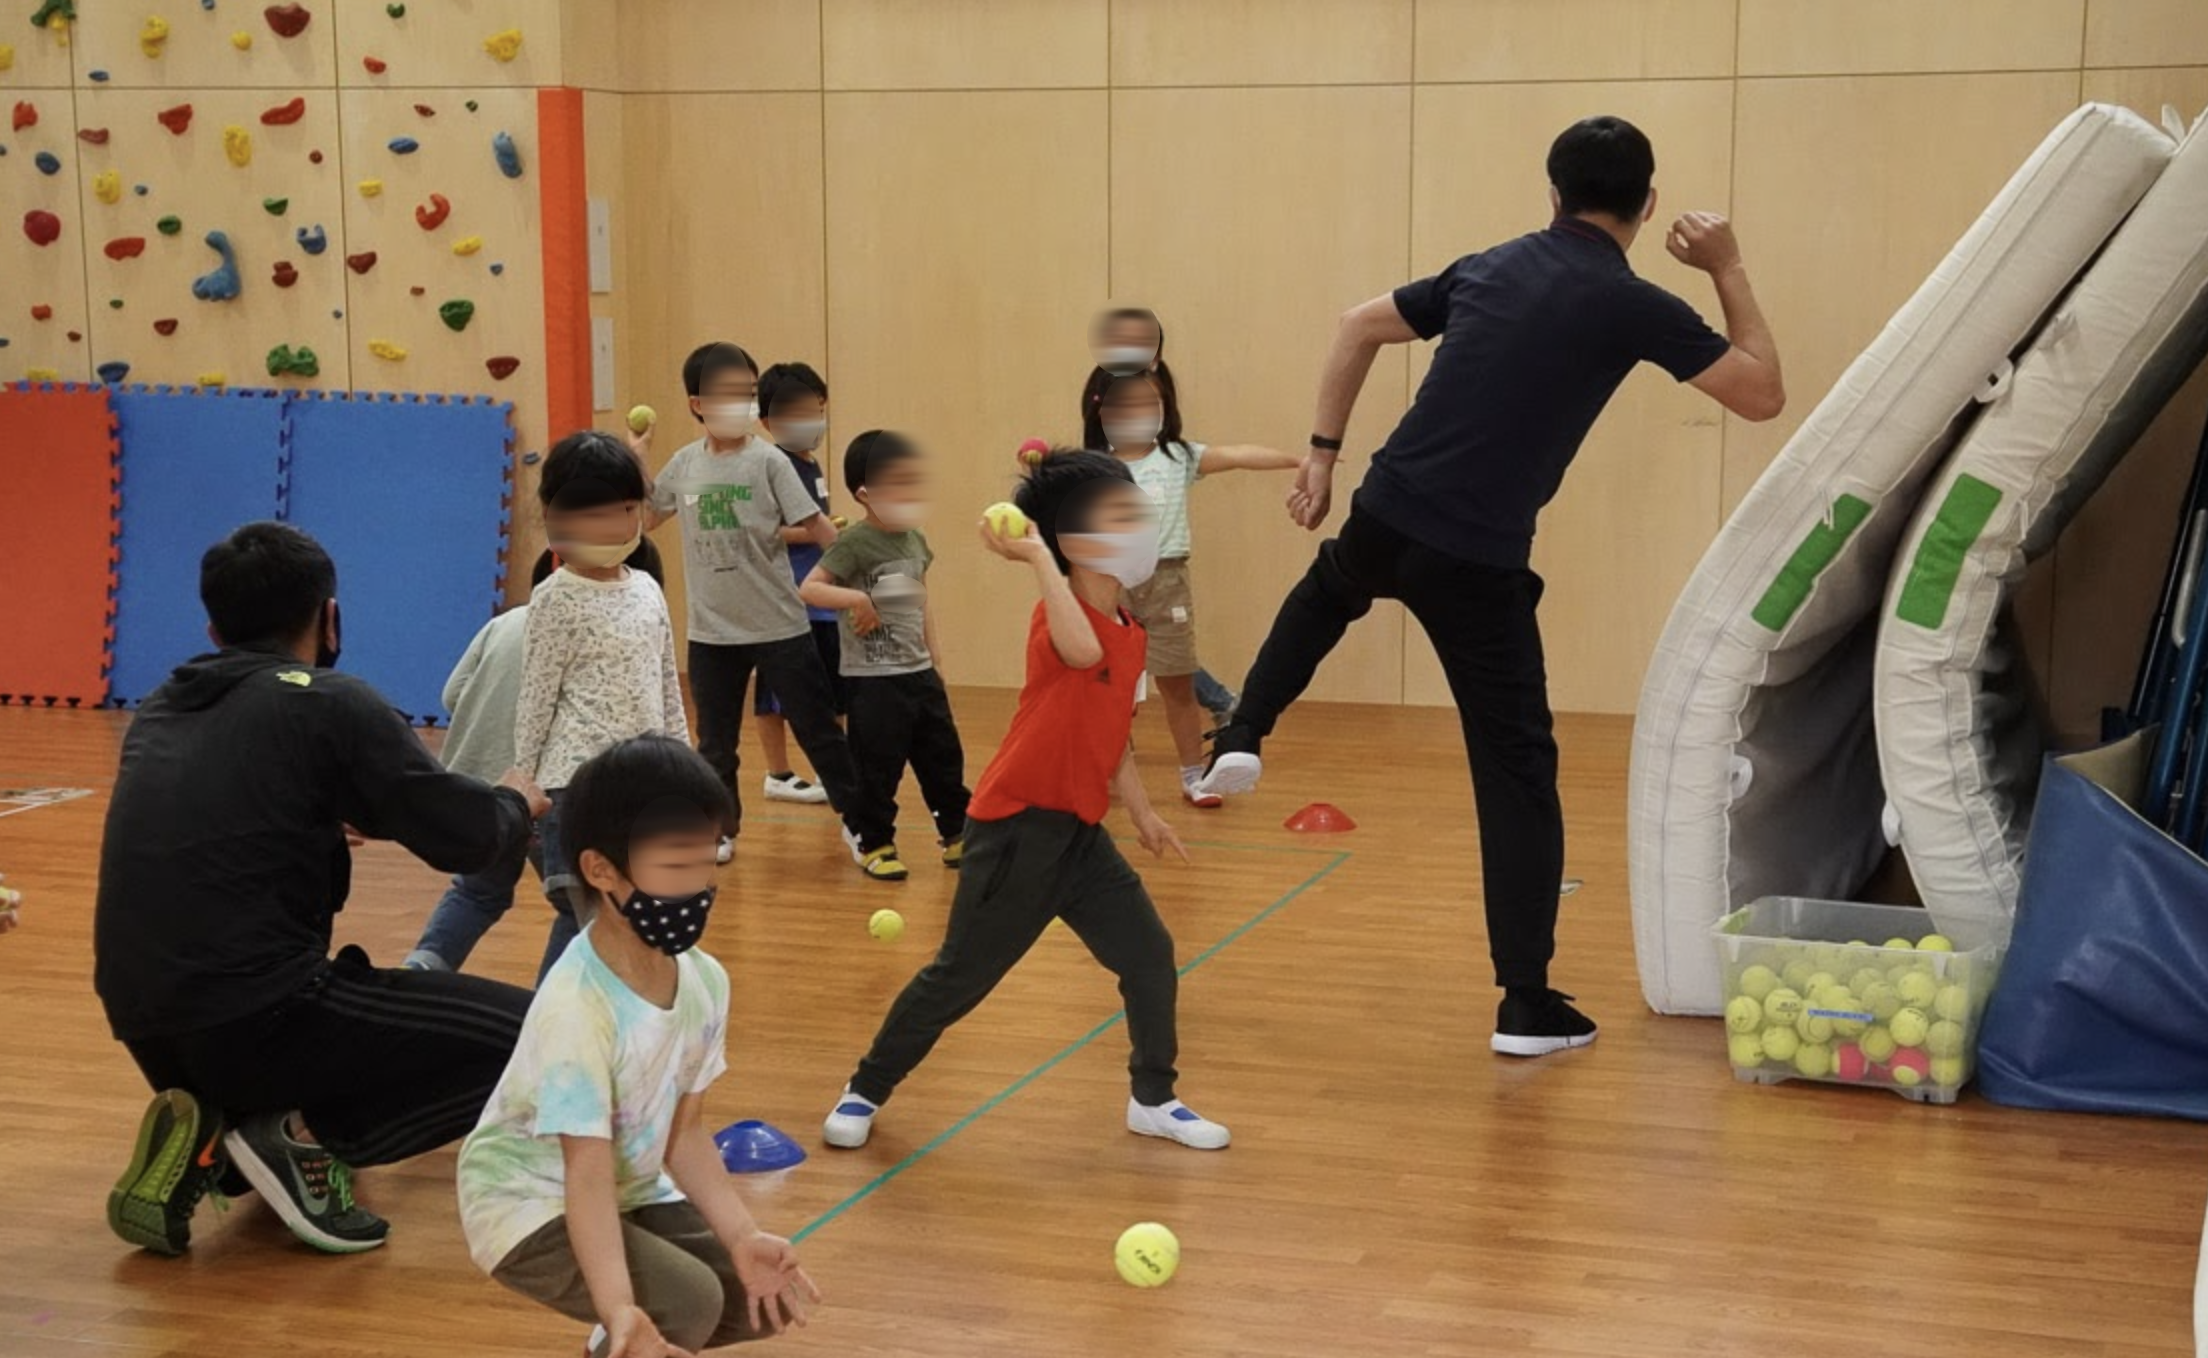 ボール投げ方マスター 開催 4歳からok 楽しみながら正しいボールの投げ方をマスター 体育の授業に活きる 遊びに役立つ大人気の教室 褒めてくれて楽しい先生と一緒にコツをつかもう 22年4月10日 日 一日体験教室 横浜 湘南で子供と遊ぶ あそびい